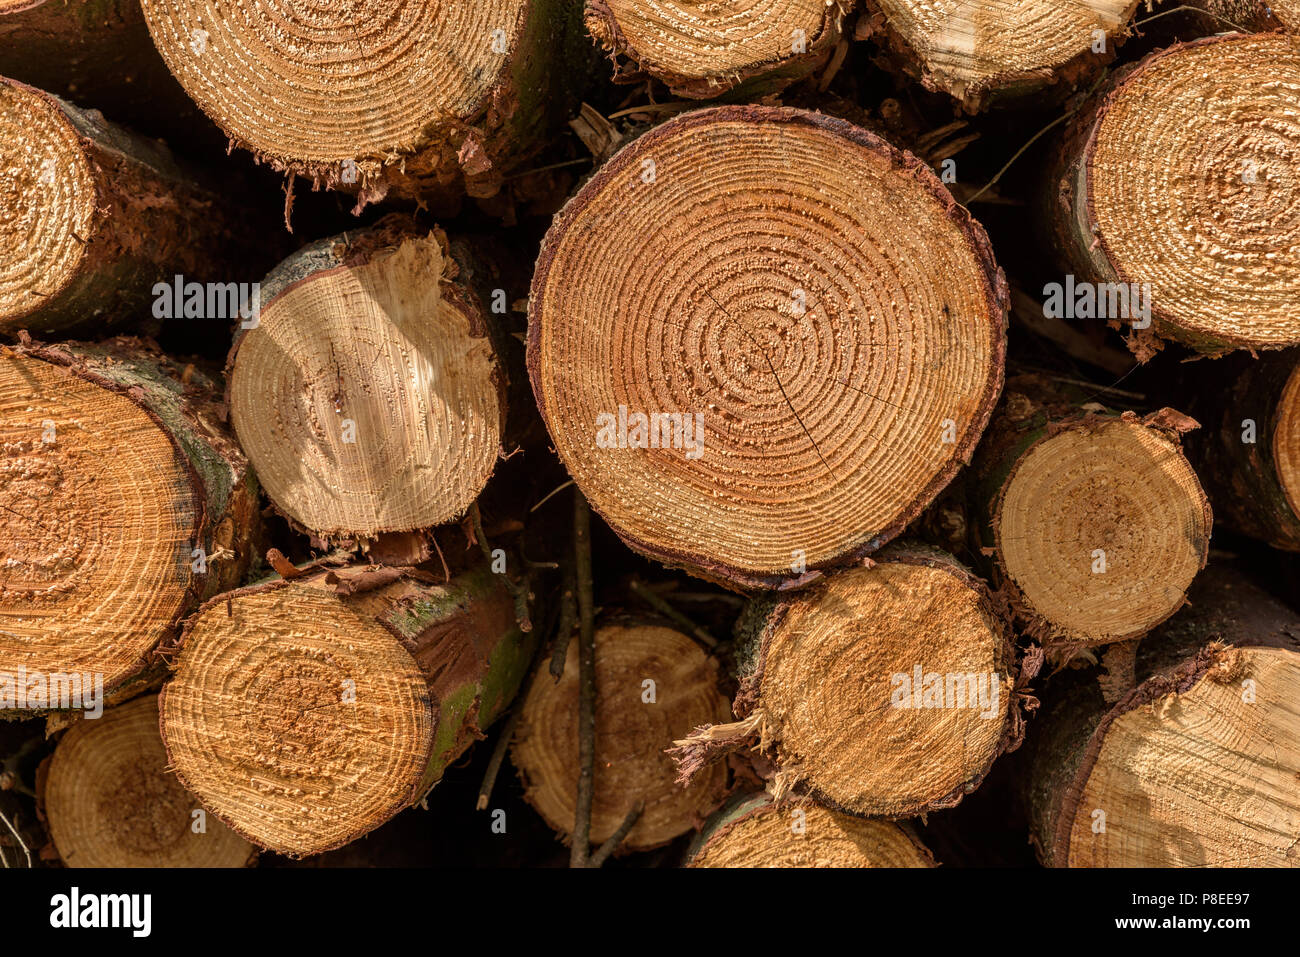 Fullframe arrière-plan d'un tas de troncs d'arbres abattus dans une forêt. Les anneaux de croissance des arbres sont clairement visibles. Banque D'Images